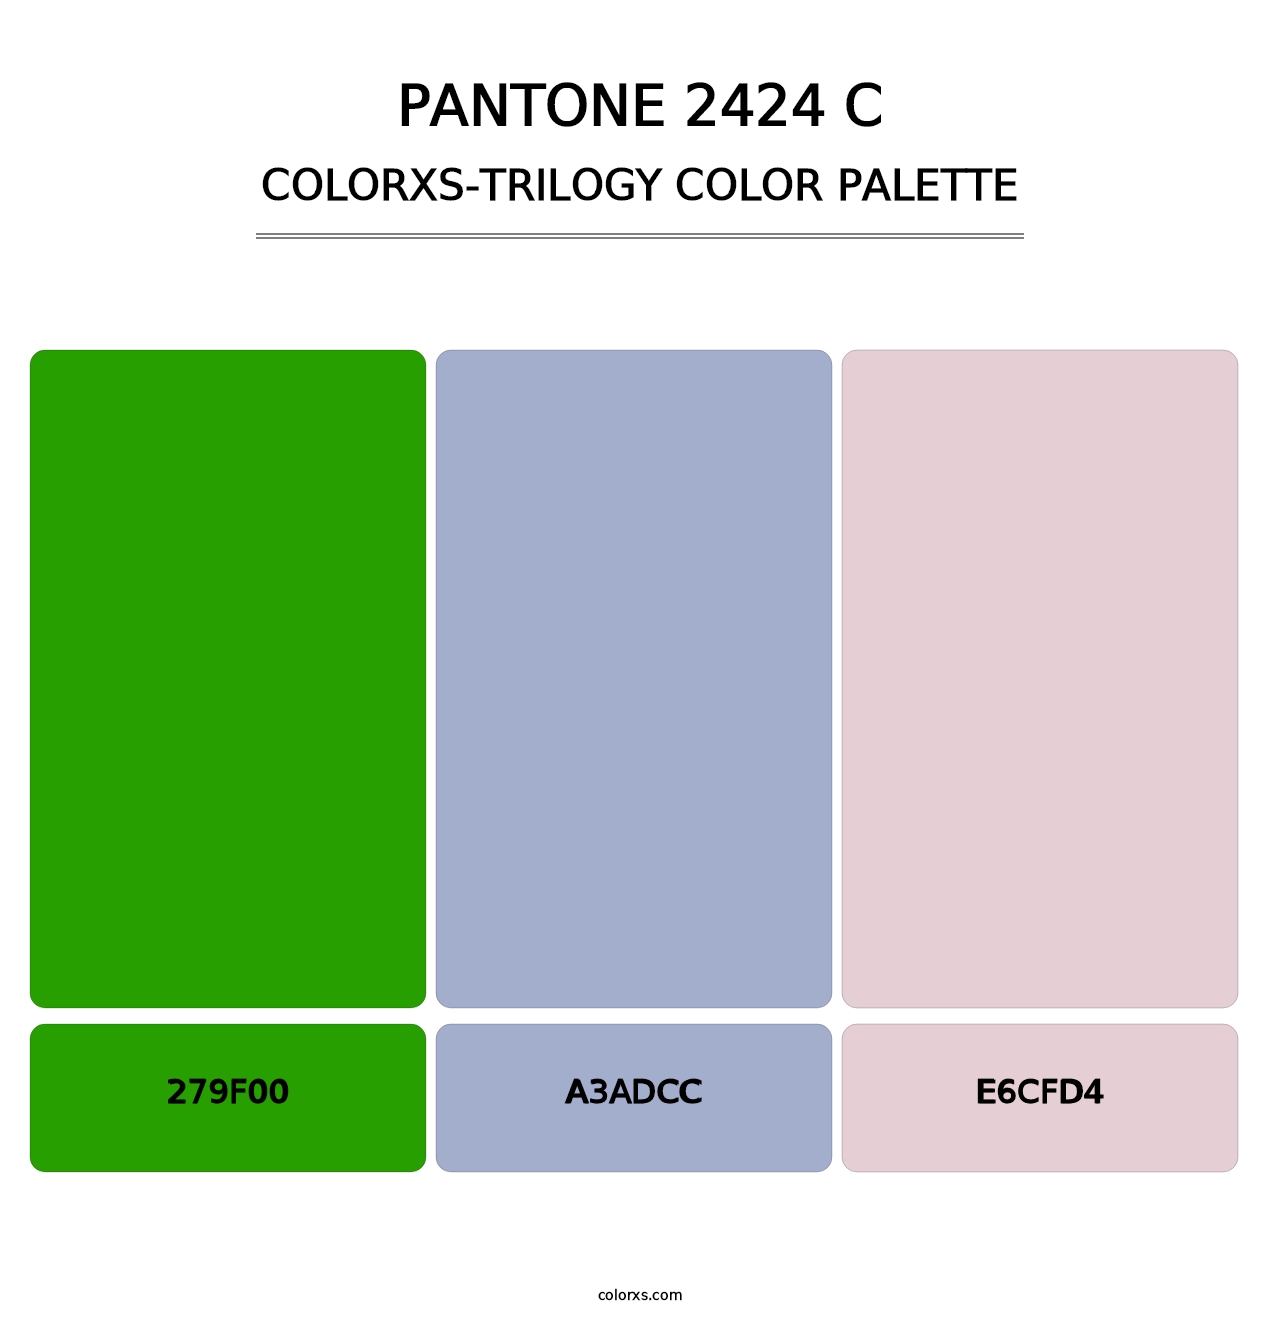 PANTONE 2424 C - Colorxs Trilogy Palette